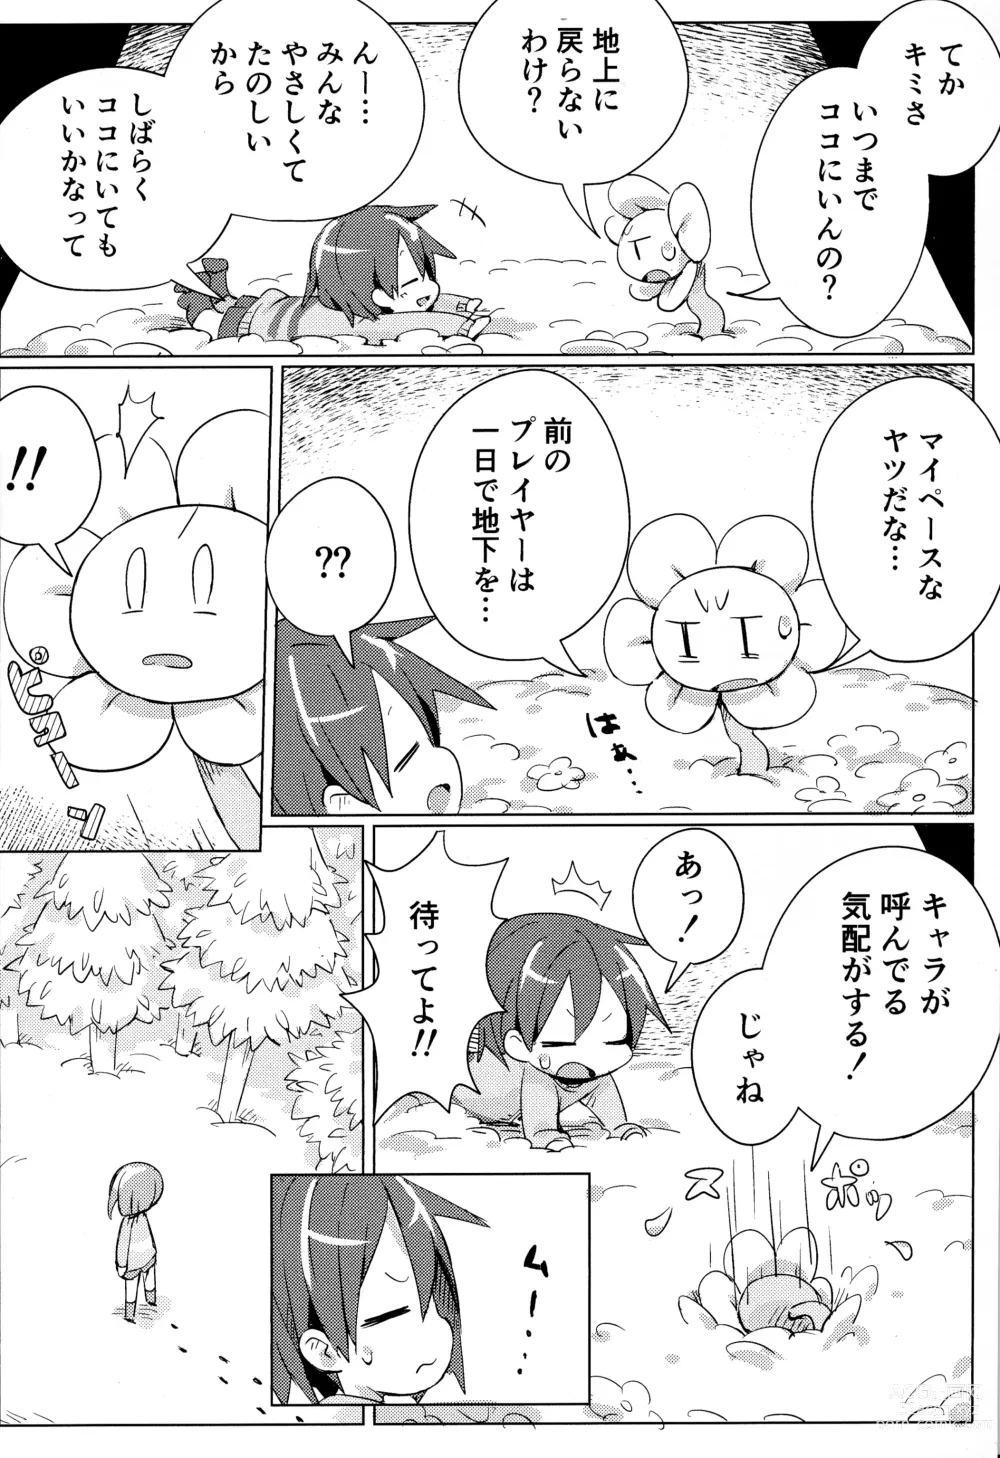 Page 5 of doujinshi Flowey, Daijoubu?